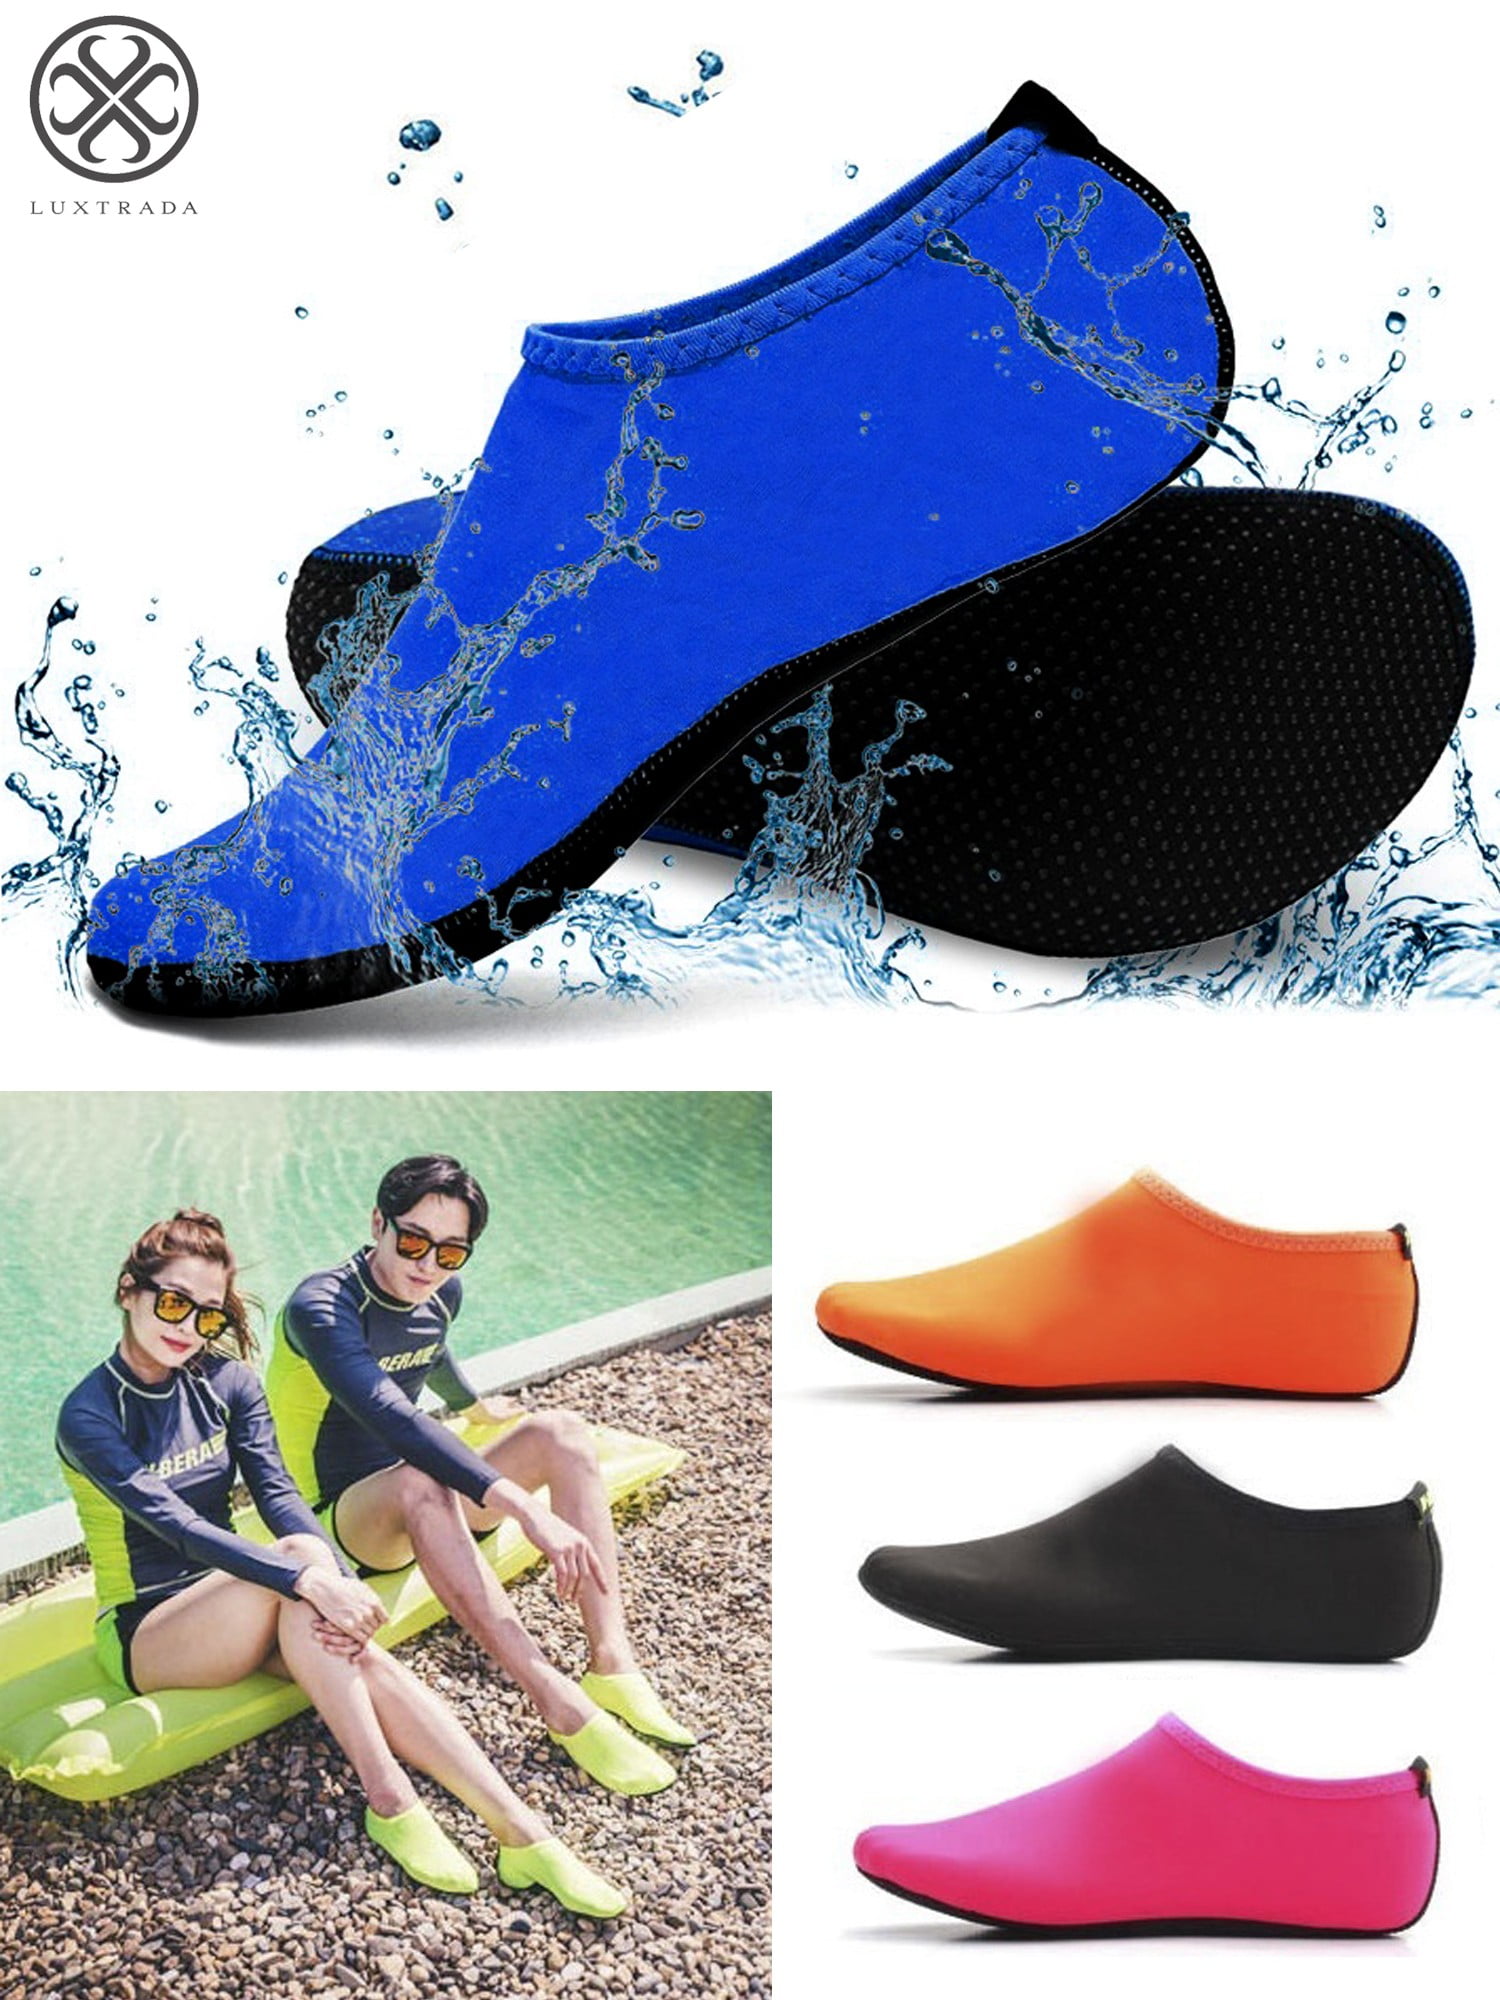 CUSHY Men Women Water Sport Shoes Nylon Neoprene Mesh Aqua Socks Yoga Exercise Pool Beach Dance Swim Slip Surfing Shoes Navy S 